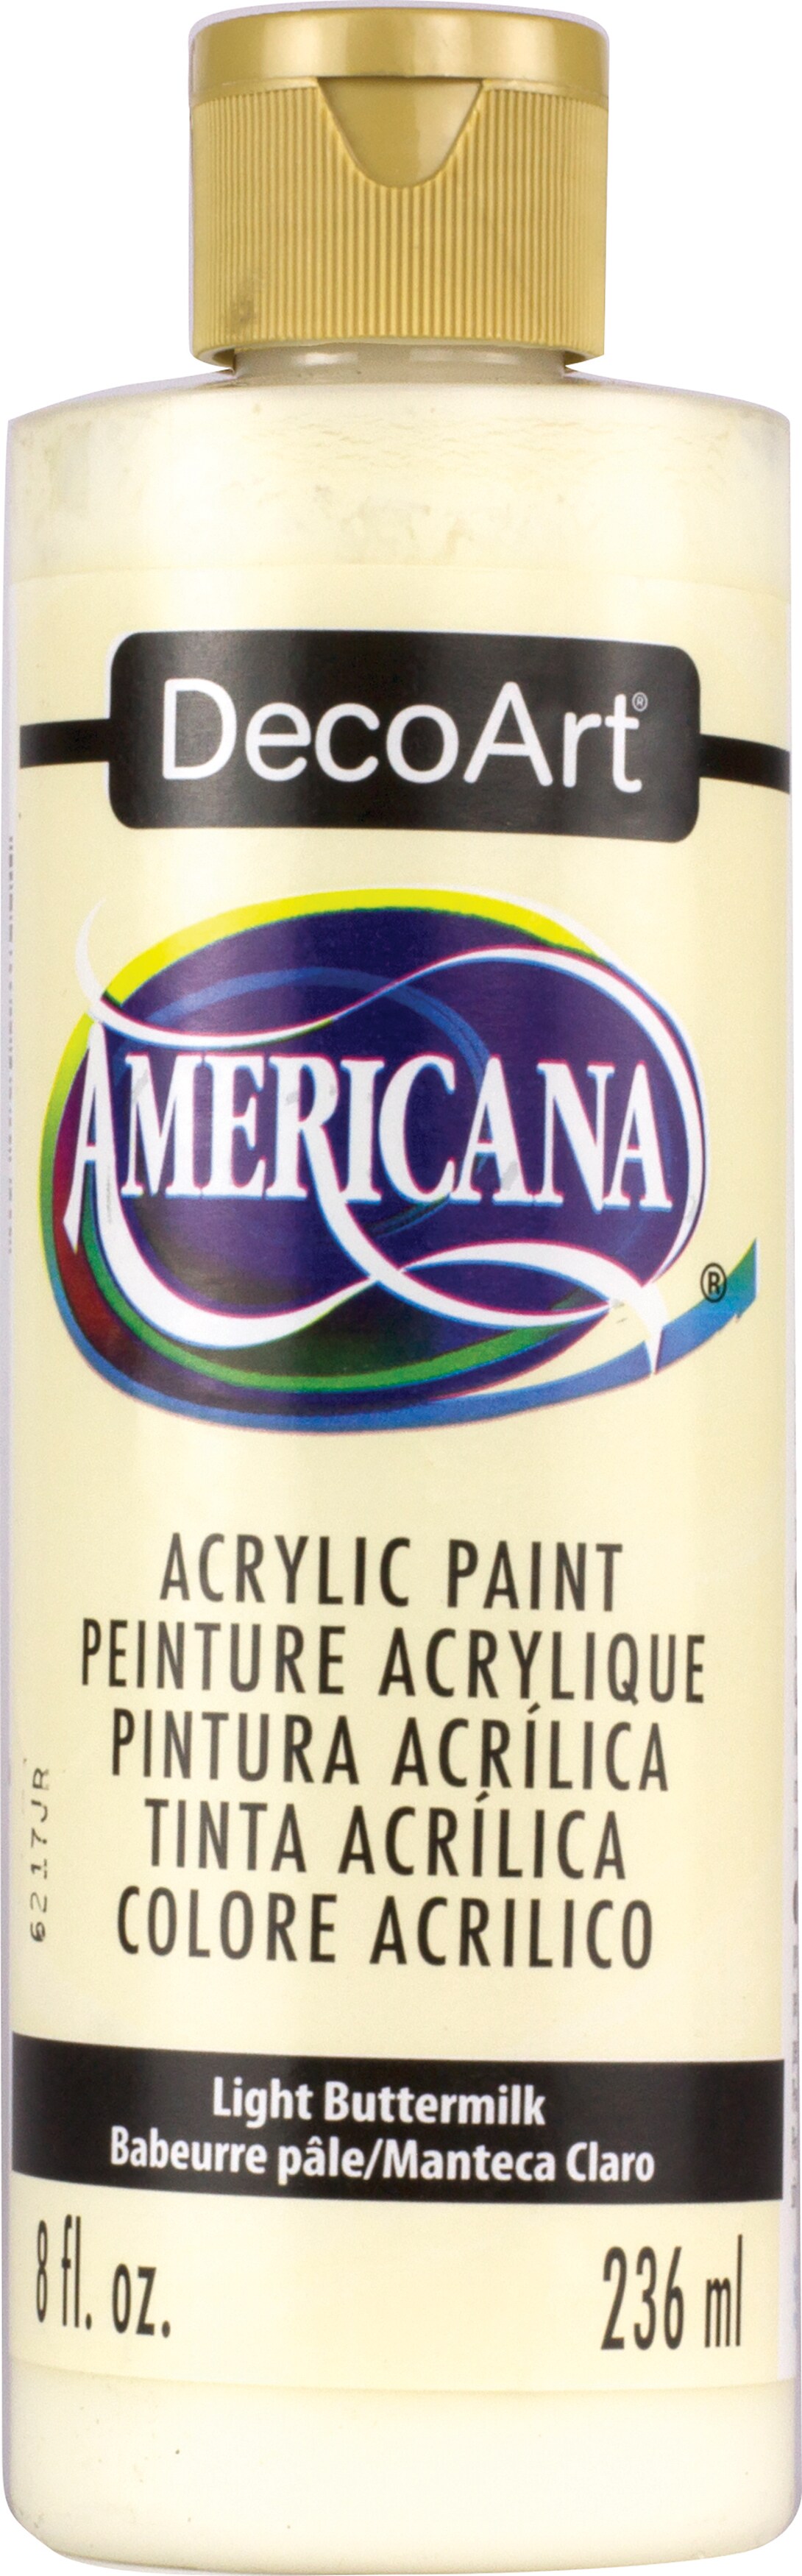 Decoart Americana Acrylic Paint